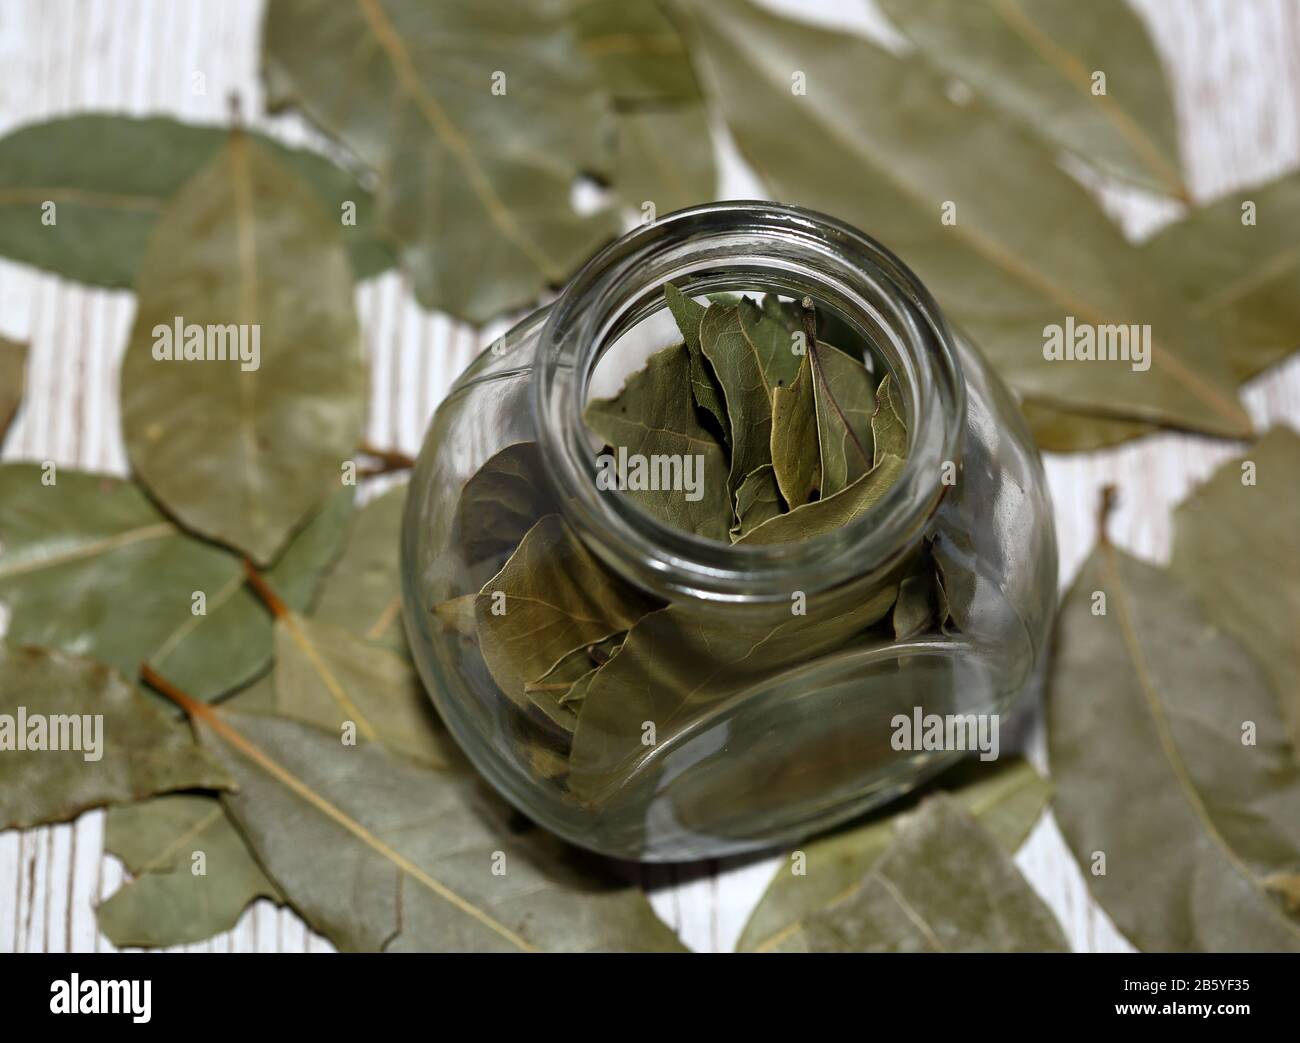 Laurel / Bay laisse dans un petit pot en verre autour de la table en bois dans le doux foyer Banque D'Images